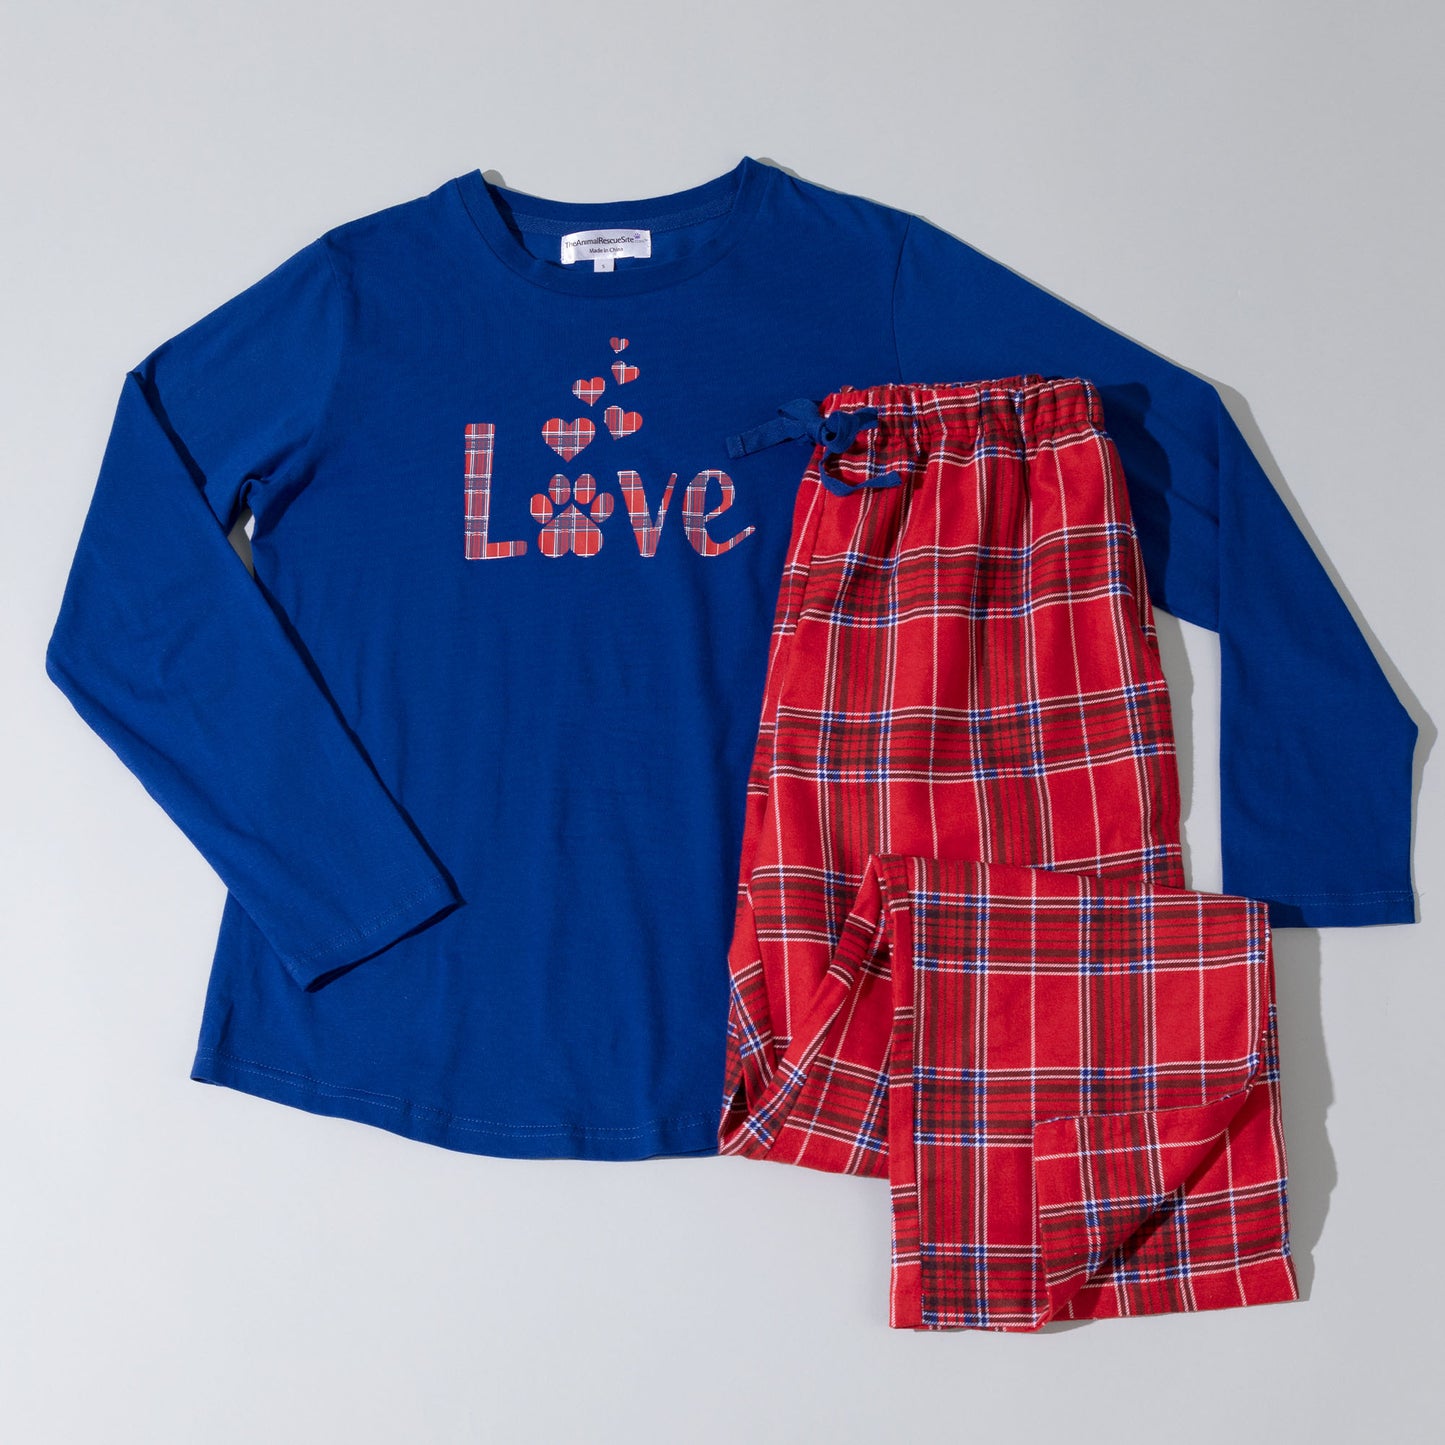 Paws & Love Plaid Pajama Set